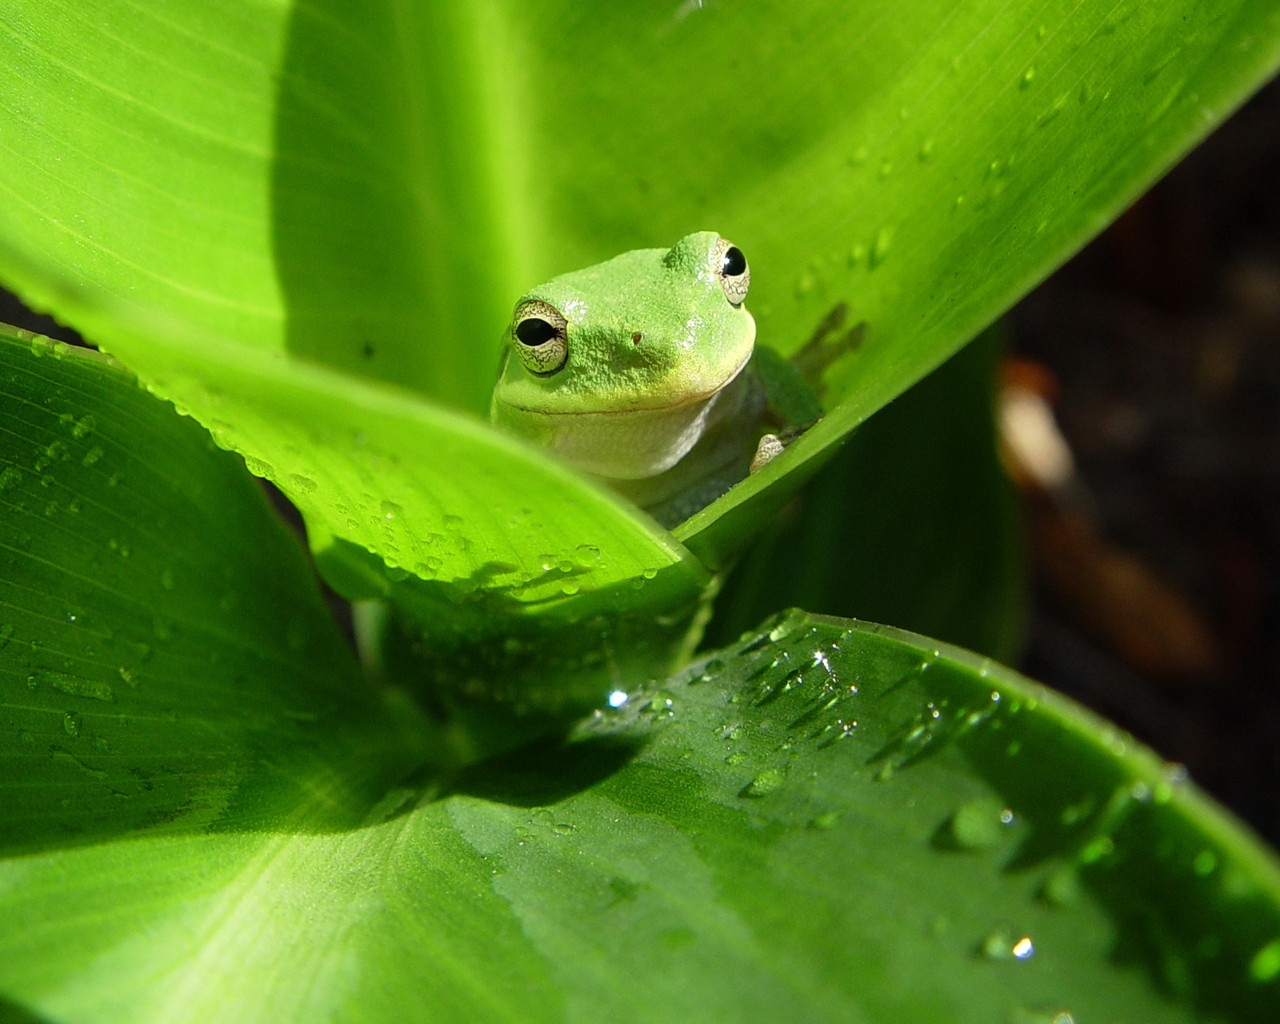 Frog on a leaf wallpaper. Frog on a leaf